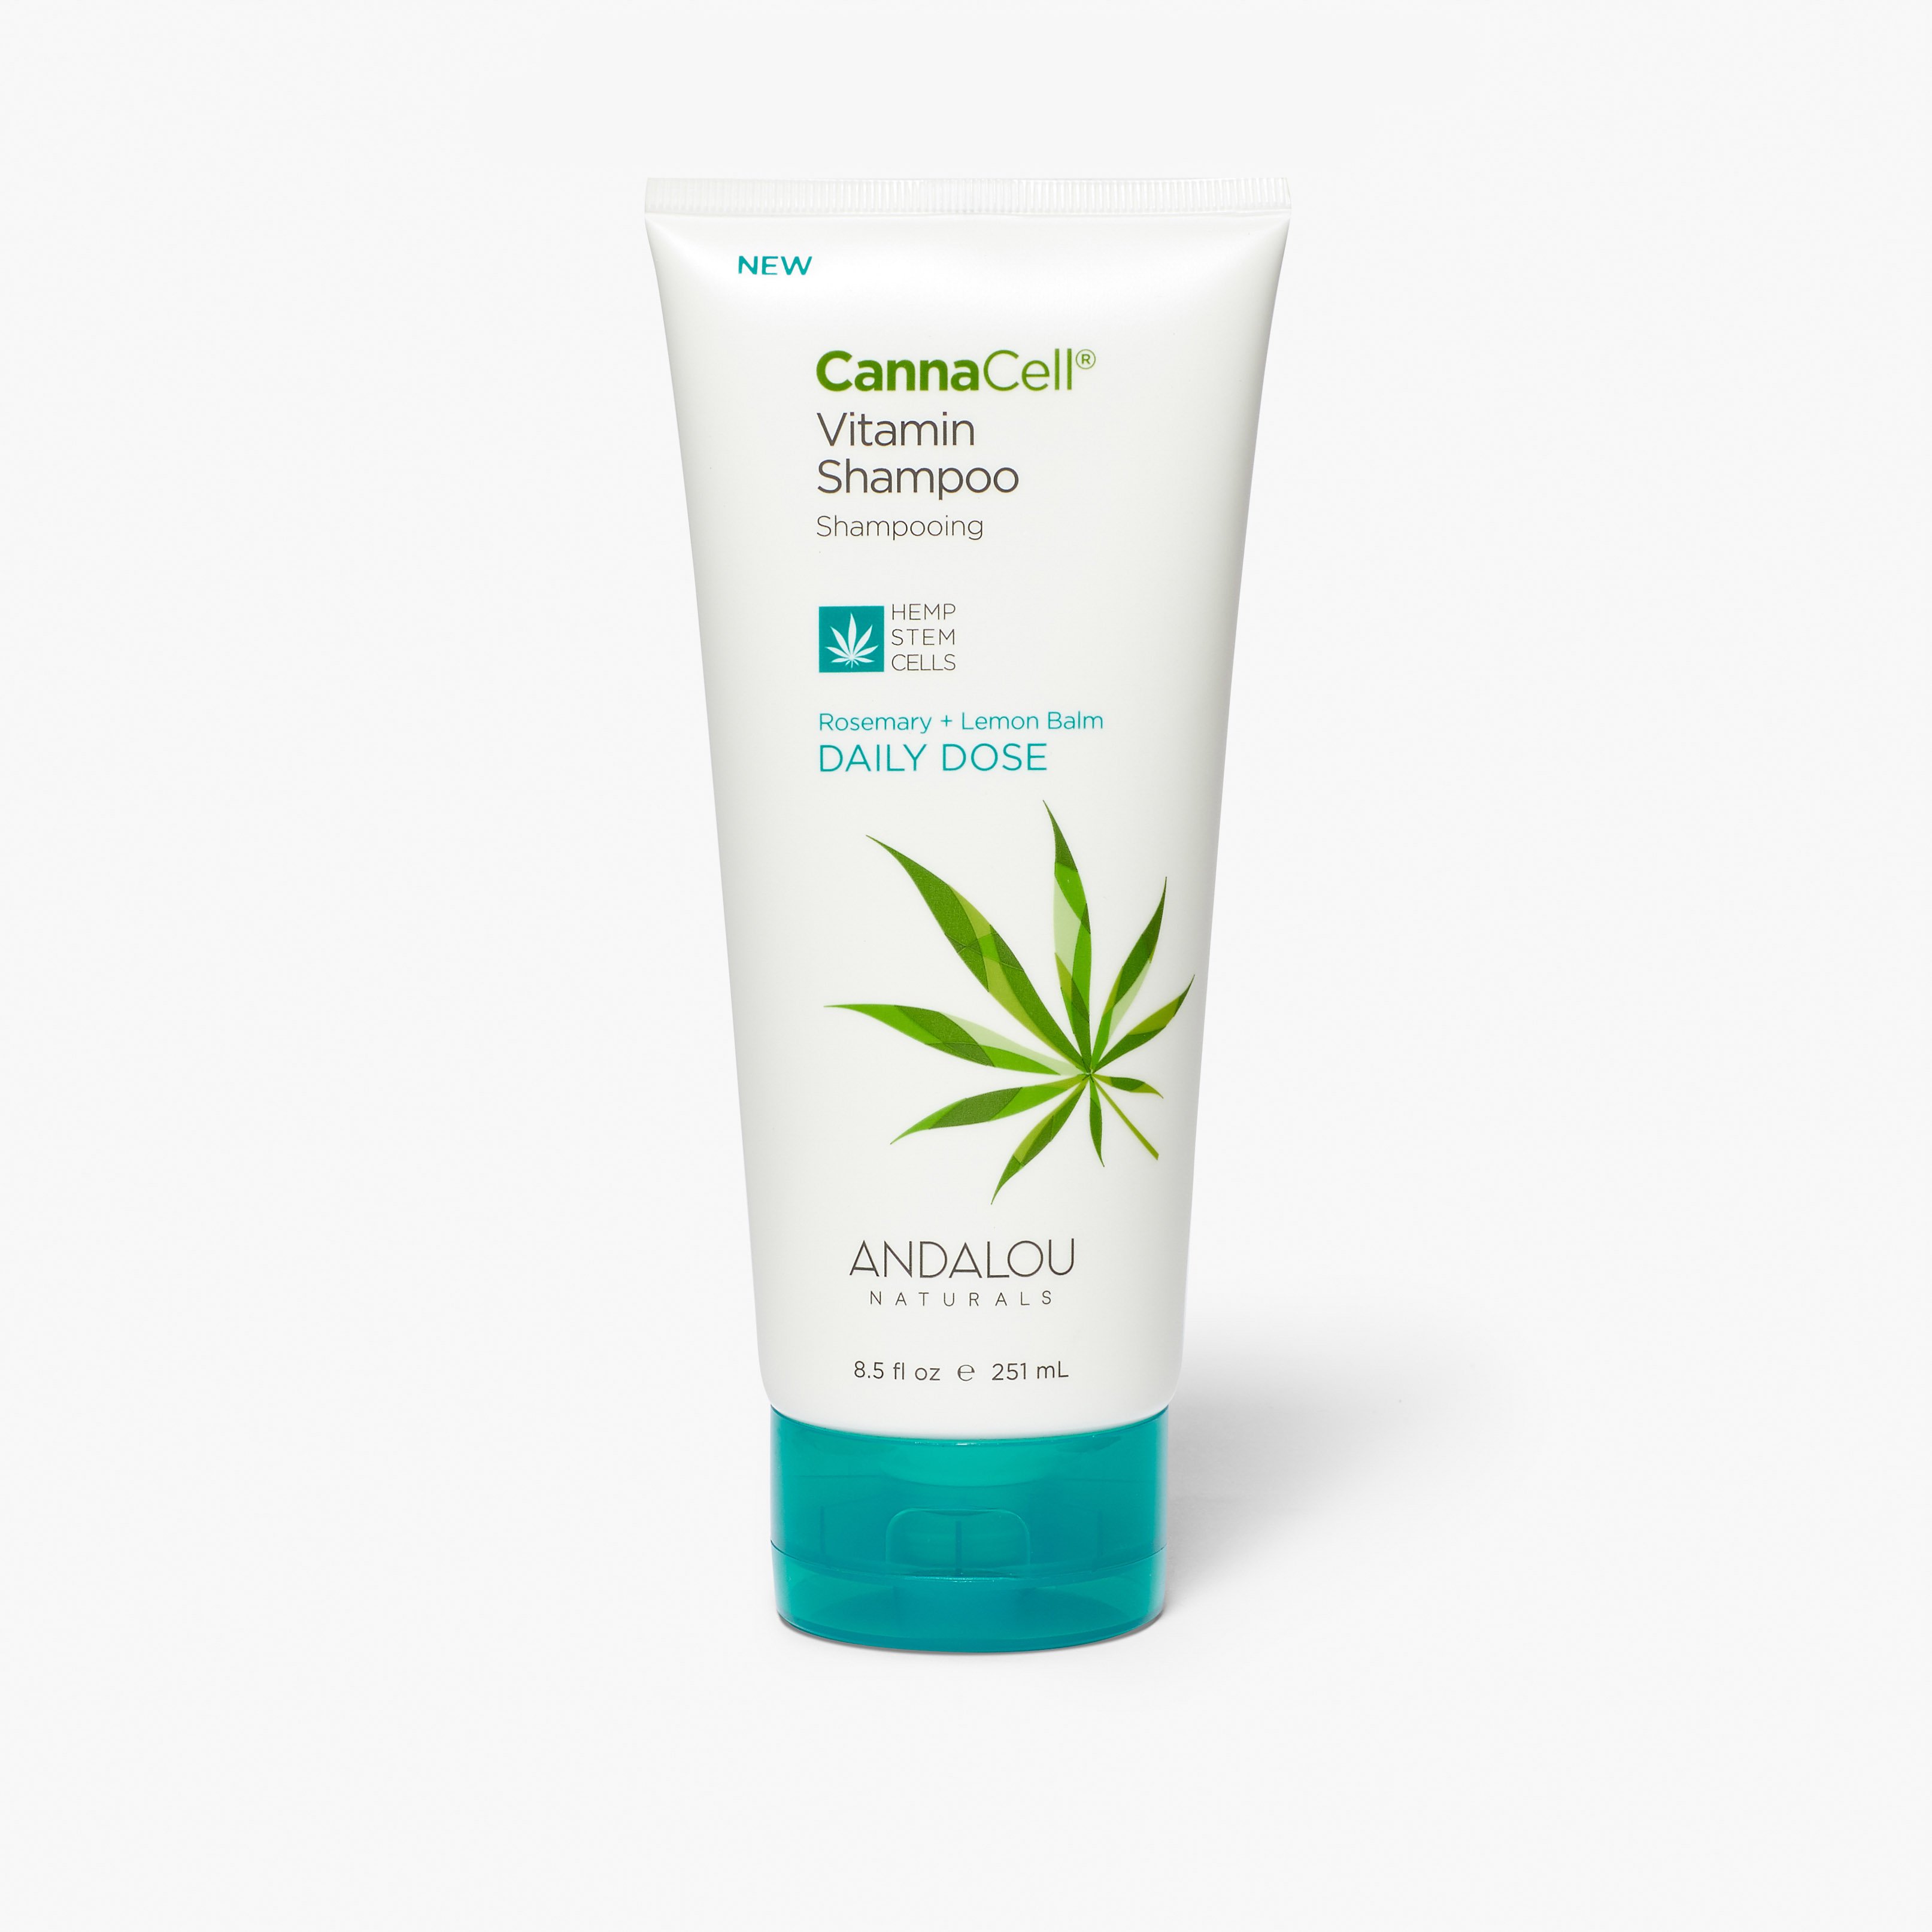 Image of CannaCell Vitamin Shampoo